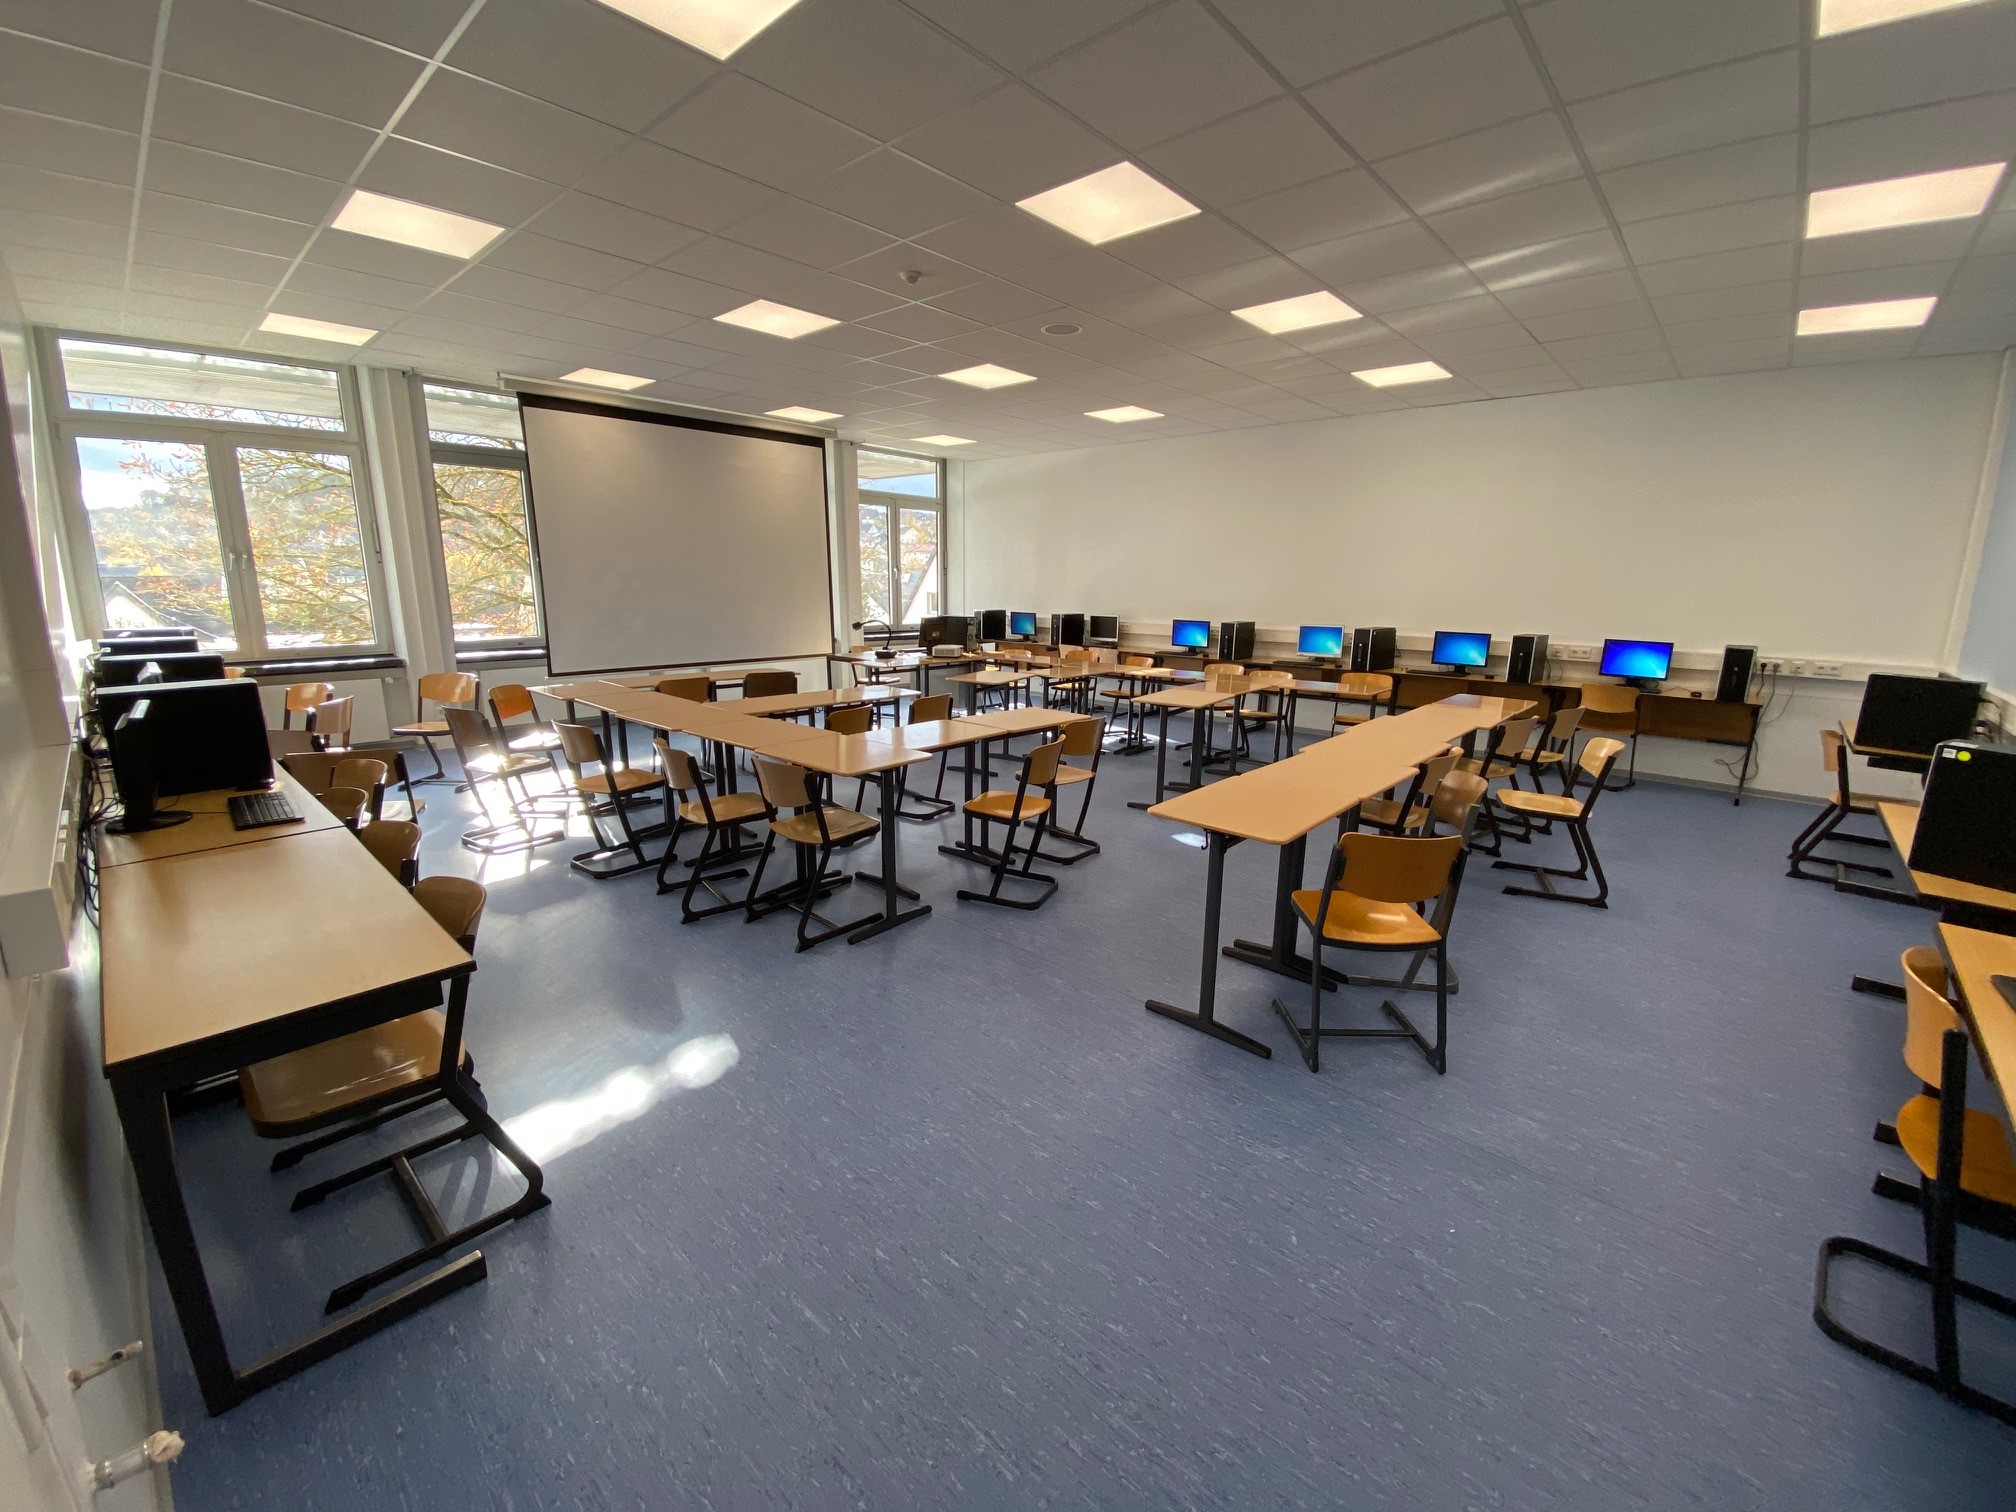 Investitionen von insgesamt rund 11 Millionen Euro in die Schulstandorte der Stadt Warstein ermöglichen modernen Unterricht im Digitalzeitalter. Foto: Alexander Goetz